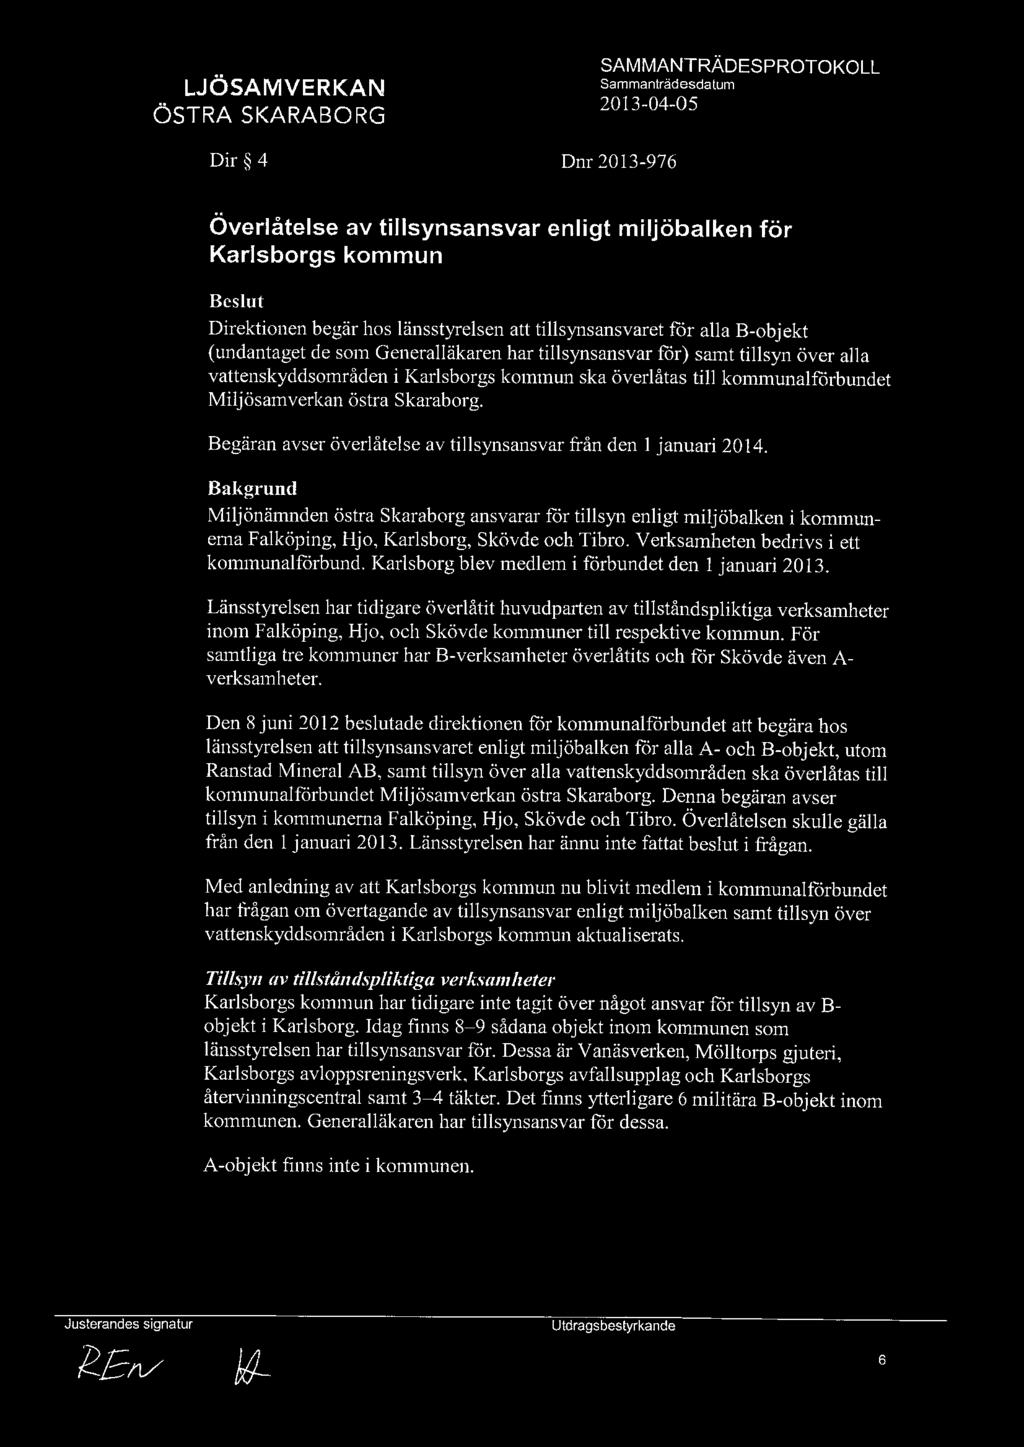 Begäran avser överlåtelse av tillsynsansvar från den l januari 2014. Miljönämnden östra skaraborg ansvarar for tillsyn enligt miljöbalken i kommunerna Falköping, Hjo, Karlsborg, Skövde och Tibro.